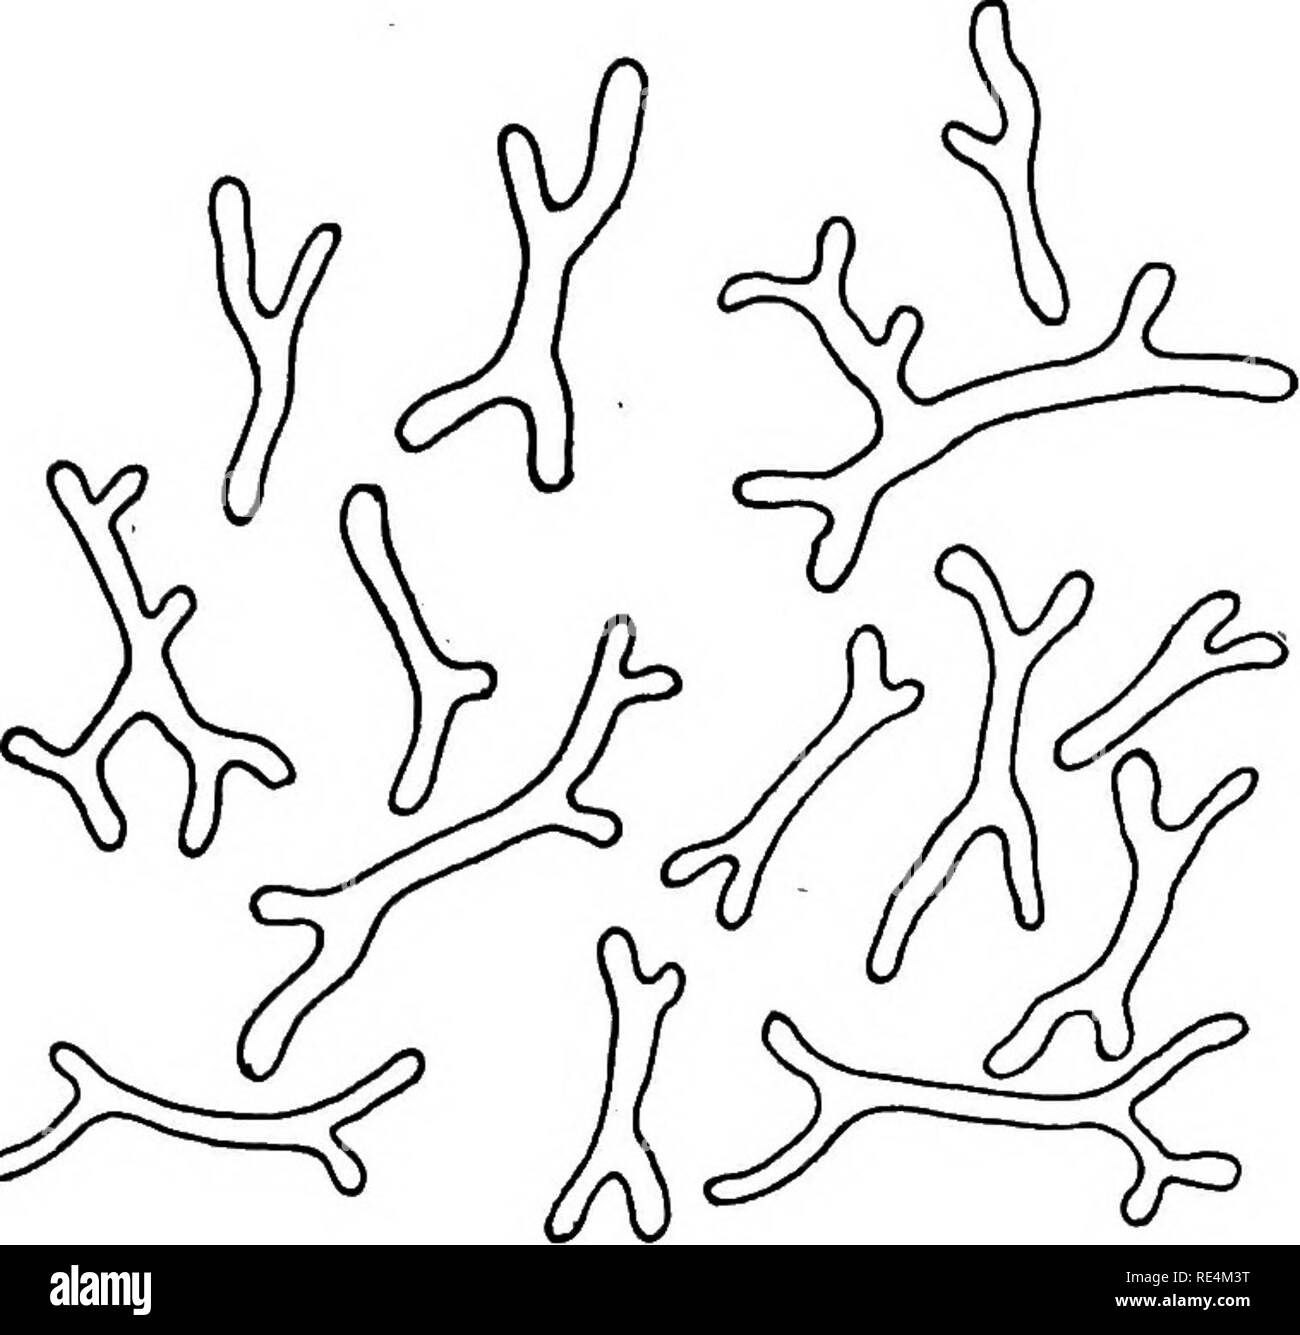 . Bactériologie pharmaceutique. Bactériologie, désinfection et de désinfectants. Les BACTÉRIES DANS LES INDUSTRIES 17s. &Gt ;^ Fig. SS---r- mutabile de les nodules des racines de TrifoUum heterodon, montrant l'ex- trême forme variation due à l'hyper-croissance. Les formulaires figurant aux porcs. 52, S3. 54. SS et s6 sont simplement des formes d'involution de la même espèce en raison des différences dans l'environnement et relation hôte. Les organes de la chromatine dans les formes hyper-alimentation (Fig. 54) sont probablement réserver des produits. '&Lt ; =^ ^ Cochon. s6. Cochon. 57. Fig. s6--torms Involution de R. mutabile comme ils se produisent dans la culture artificielle (boeuf Banque D'Images